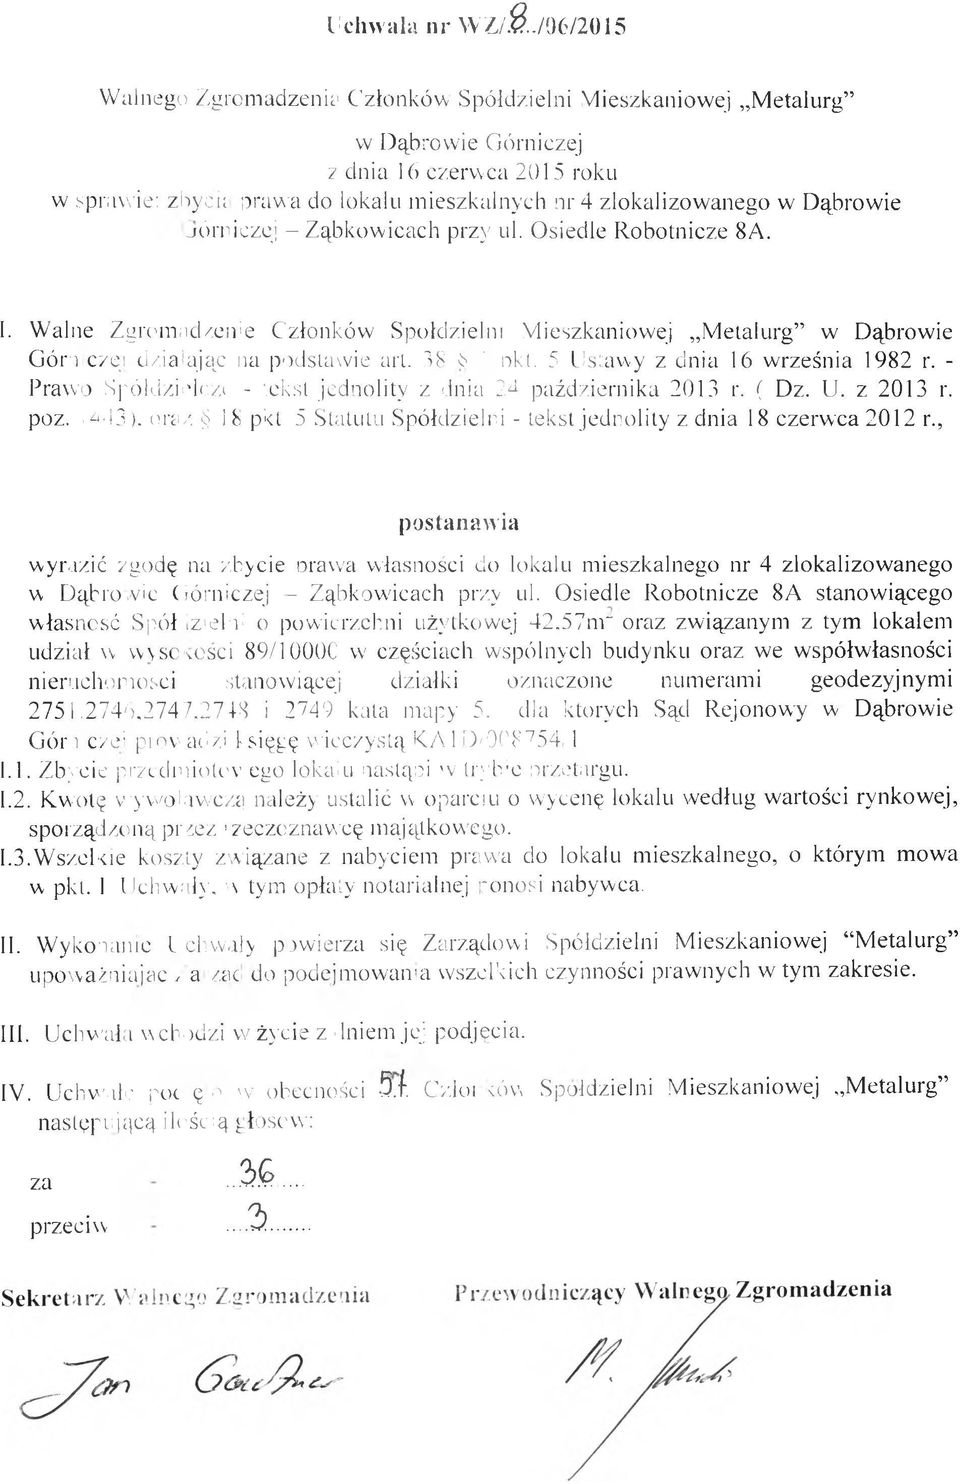 - Prawo Spókizieiozi - tekst jednolity z dnia 24 października 2013 r. ( Dz. U. z 2013 r. poz. M43).